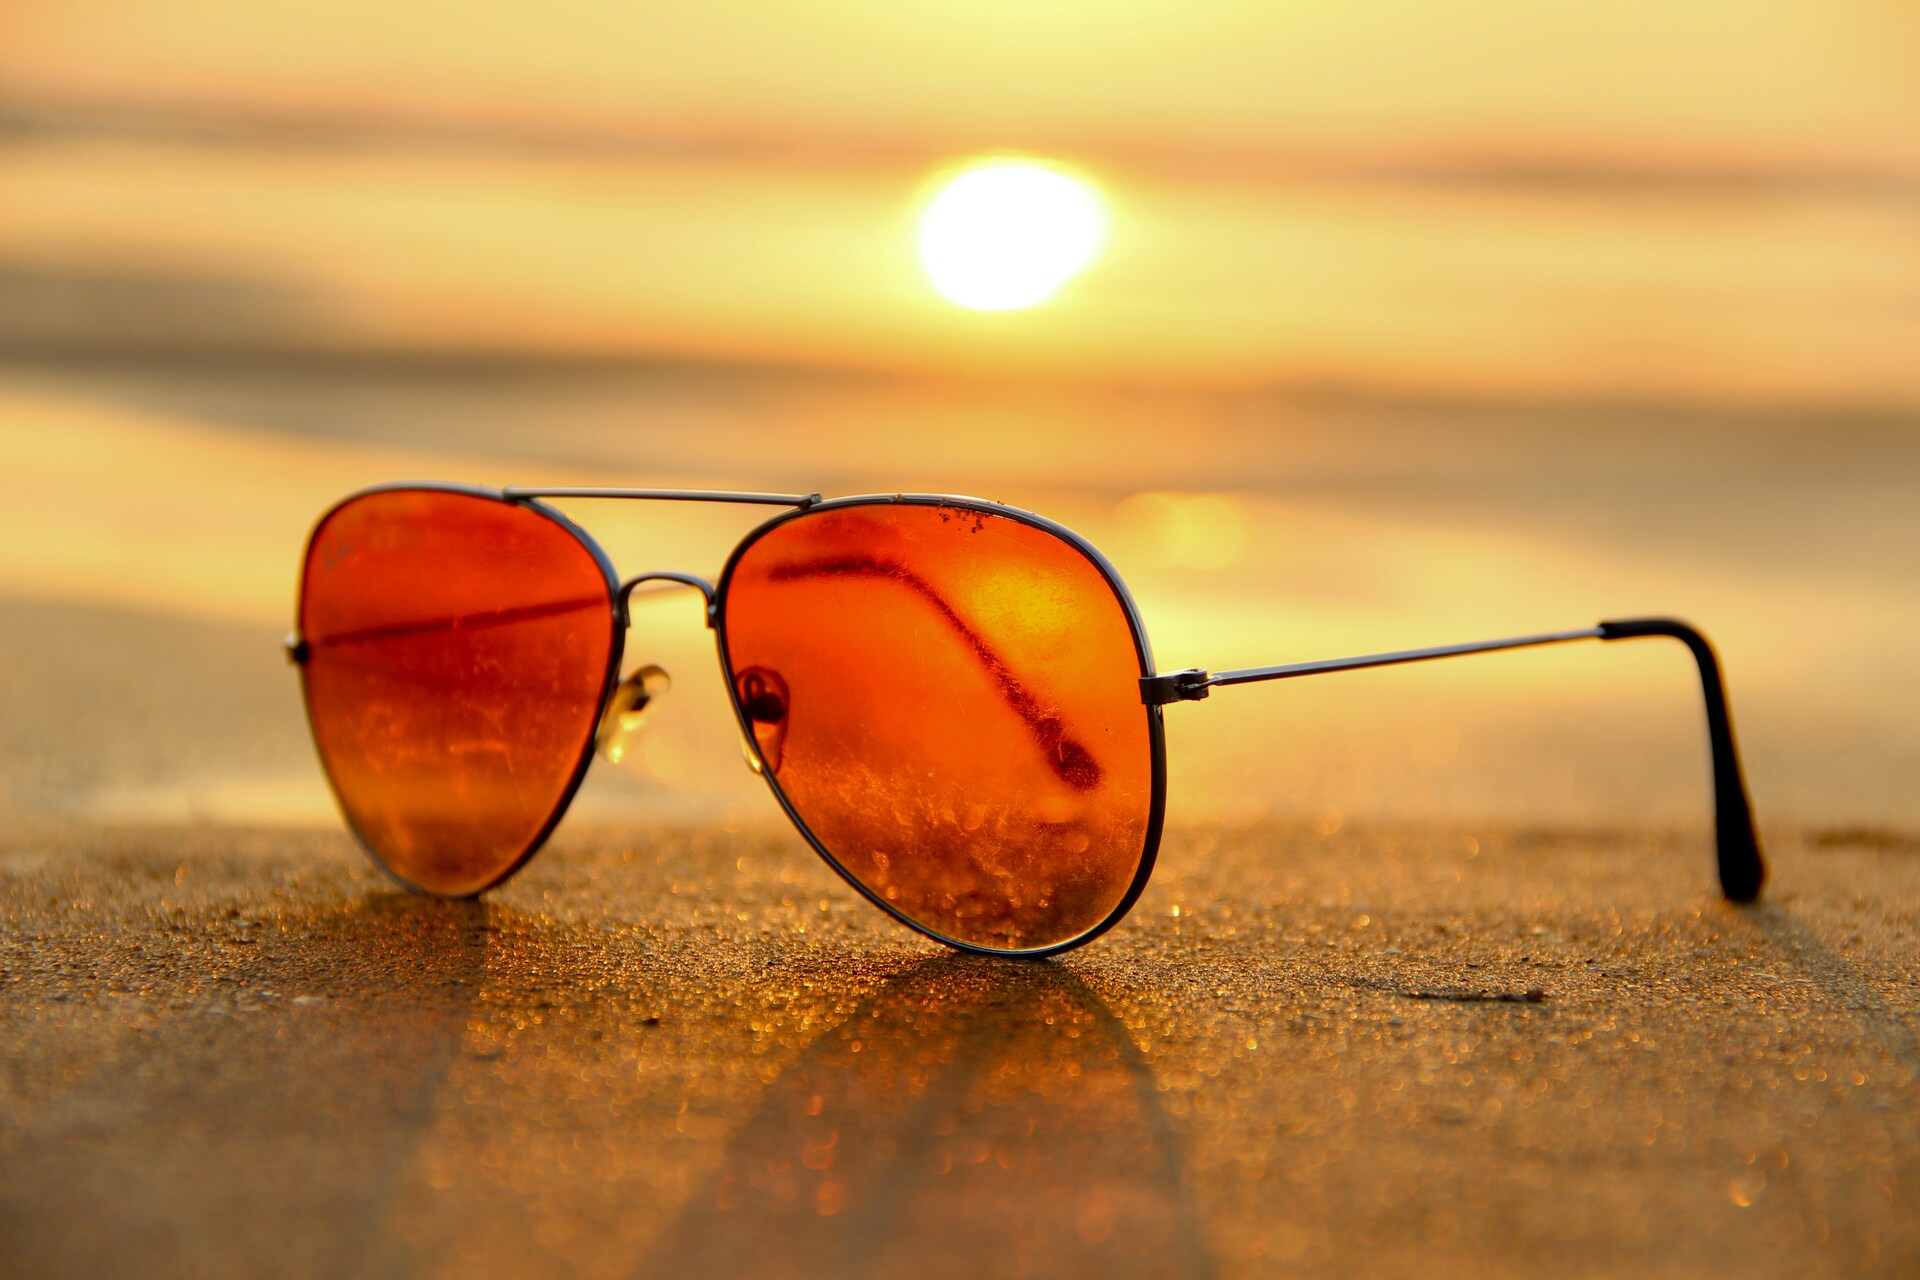 Sunglasses on sand